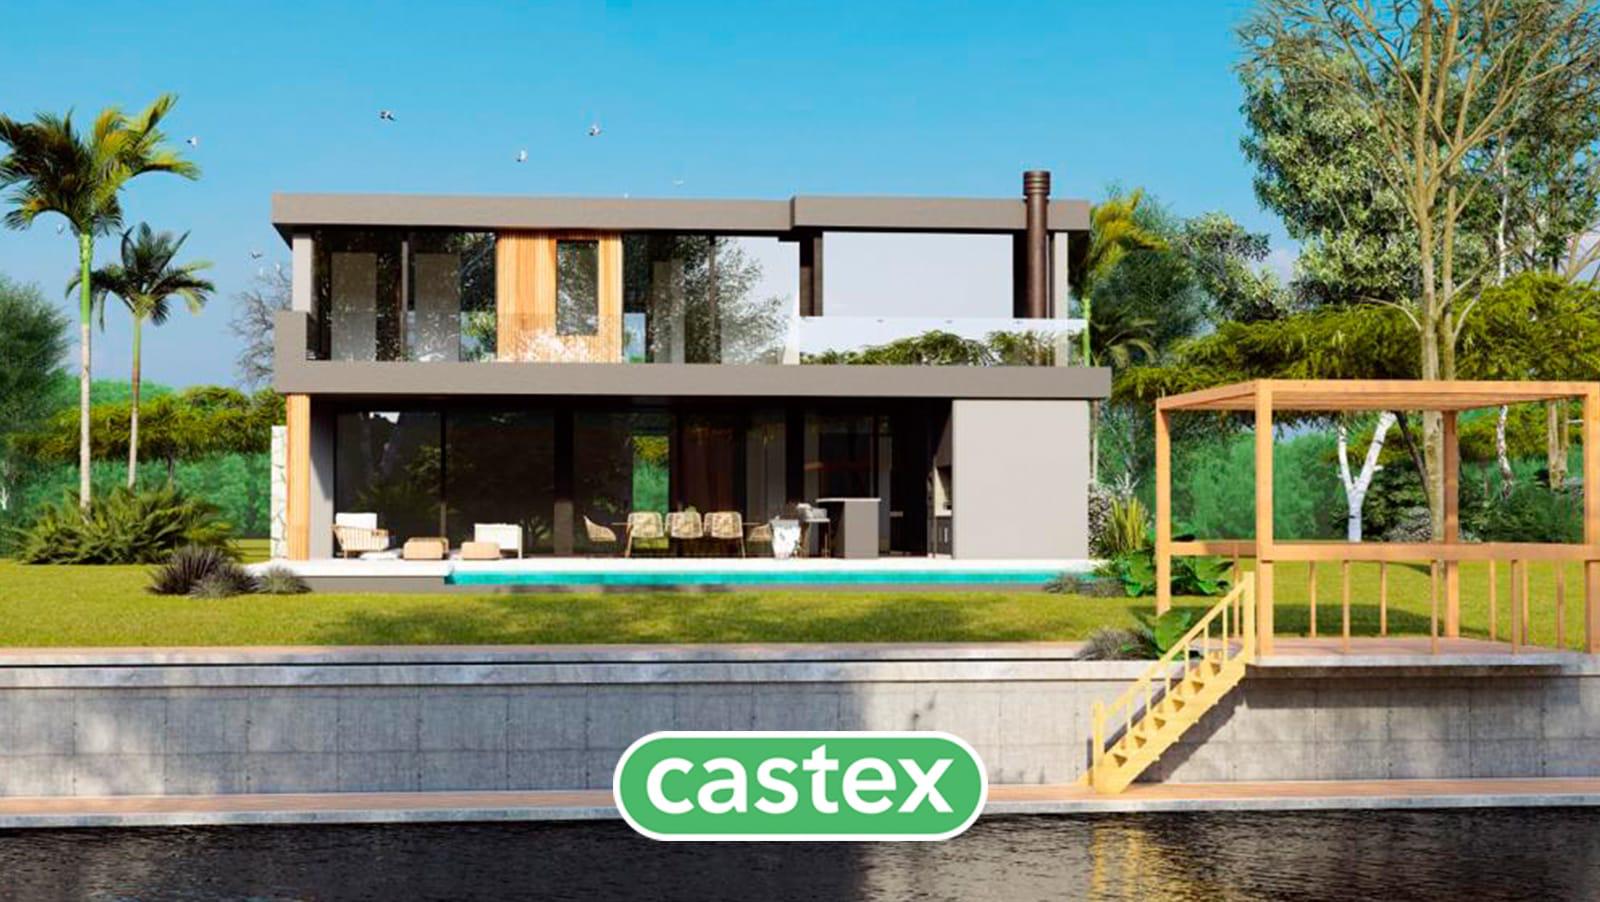 #5109611 | Sale | House | El Yacht (Castex Tigre)